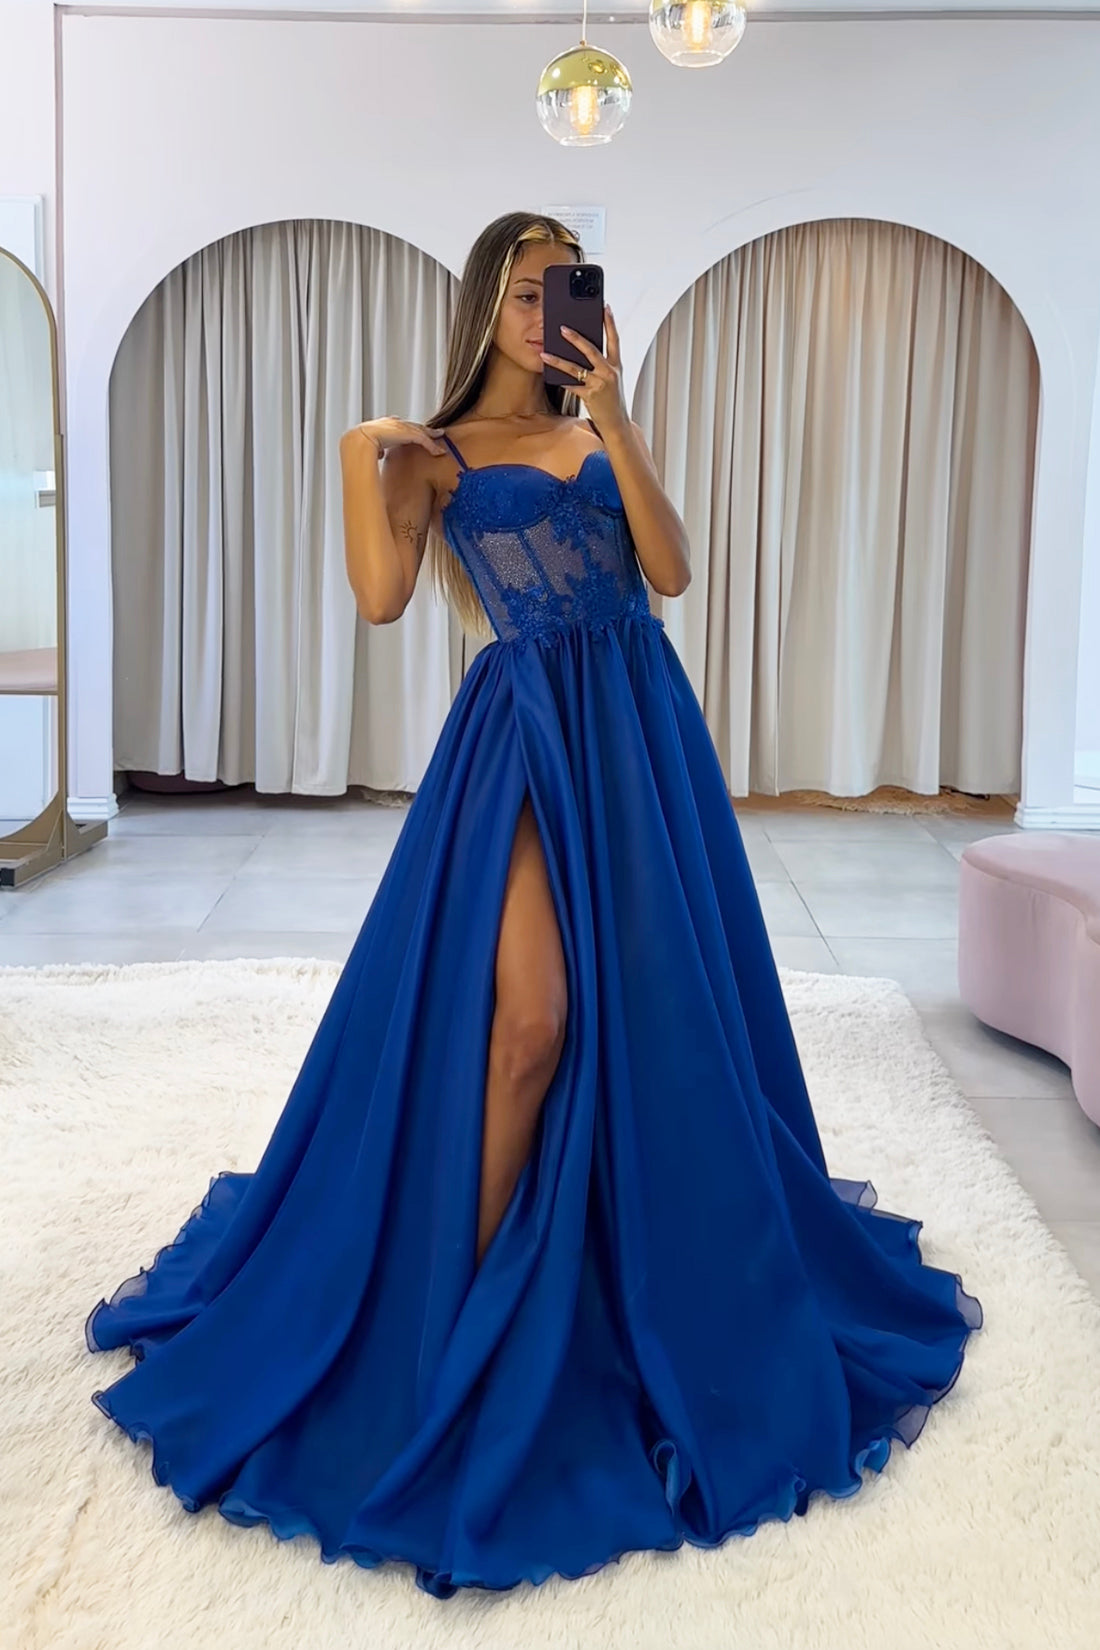 Blue Spaghetti Strap Chiffon Lace Long Prom Dress, Beautiful A-Line Evening Party Dress